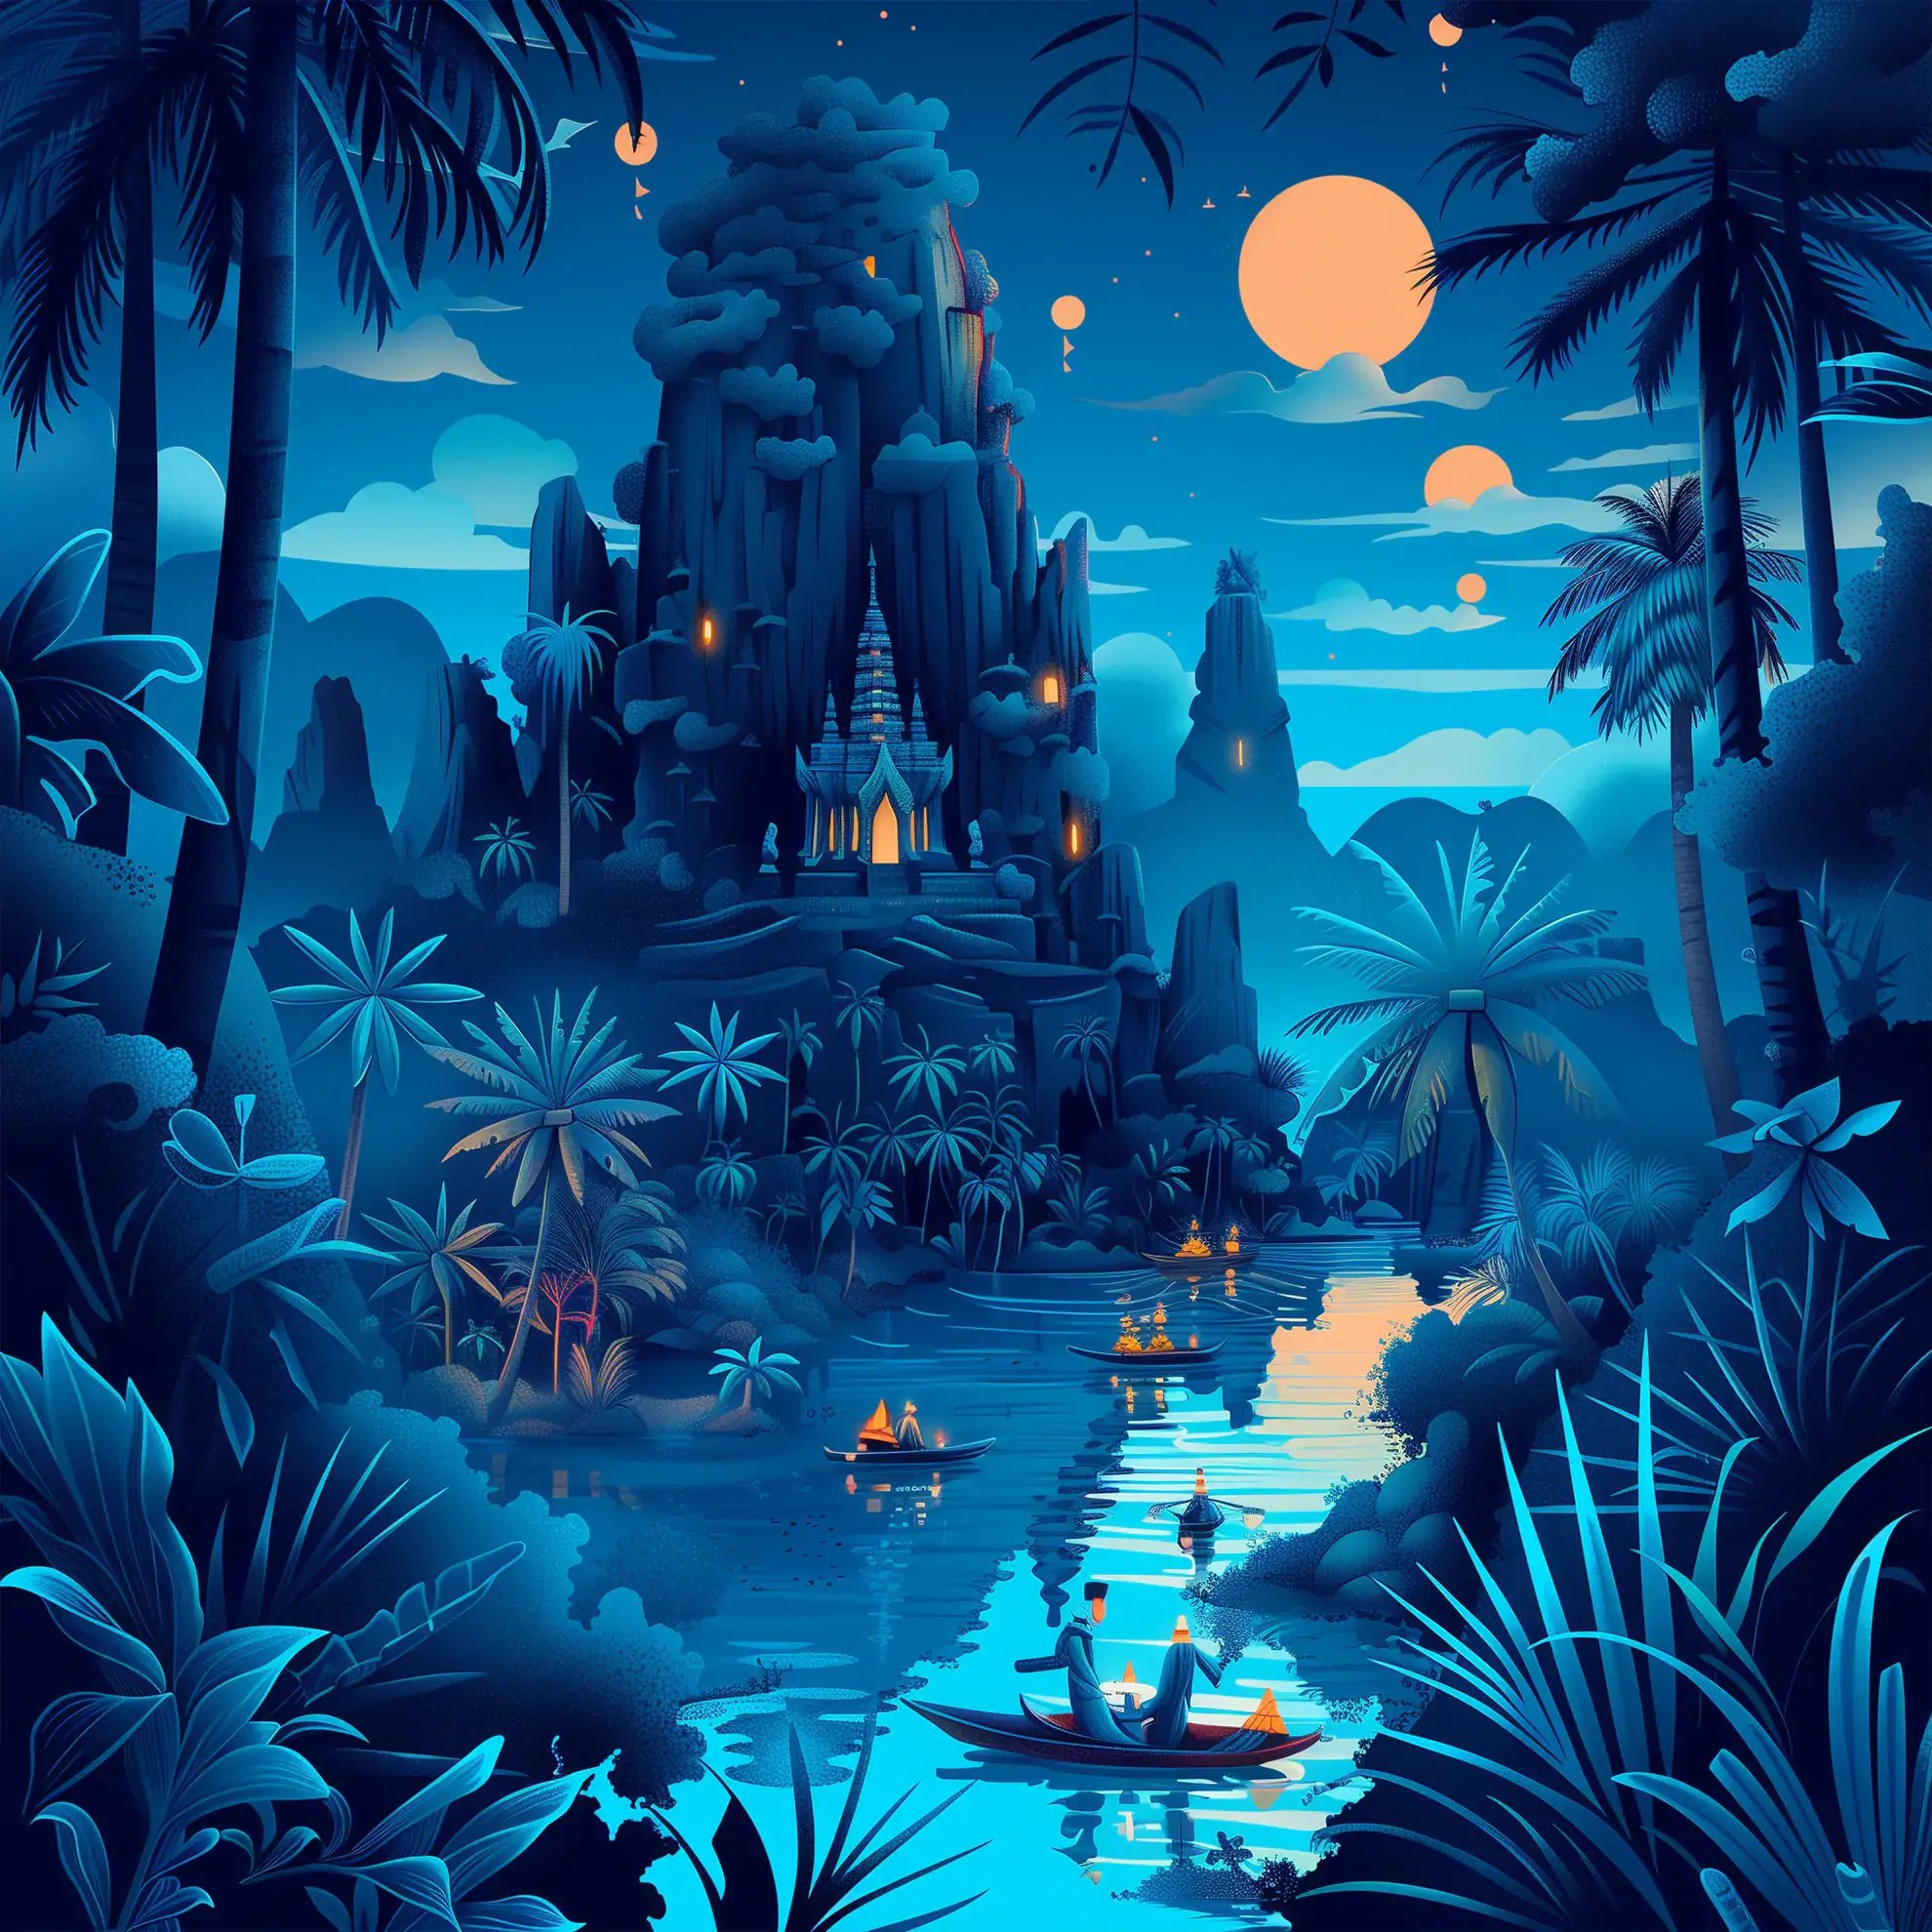 Идиллический тропический пейзаж в сумерках: водопады, ниспадающие с горы рядом с традиционным сооружением, освещенным мягким светом луны и фонарями, символизирующими безмятежную и манящую природу бразильского джиу-джитсу в Таиланде.